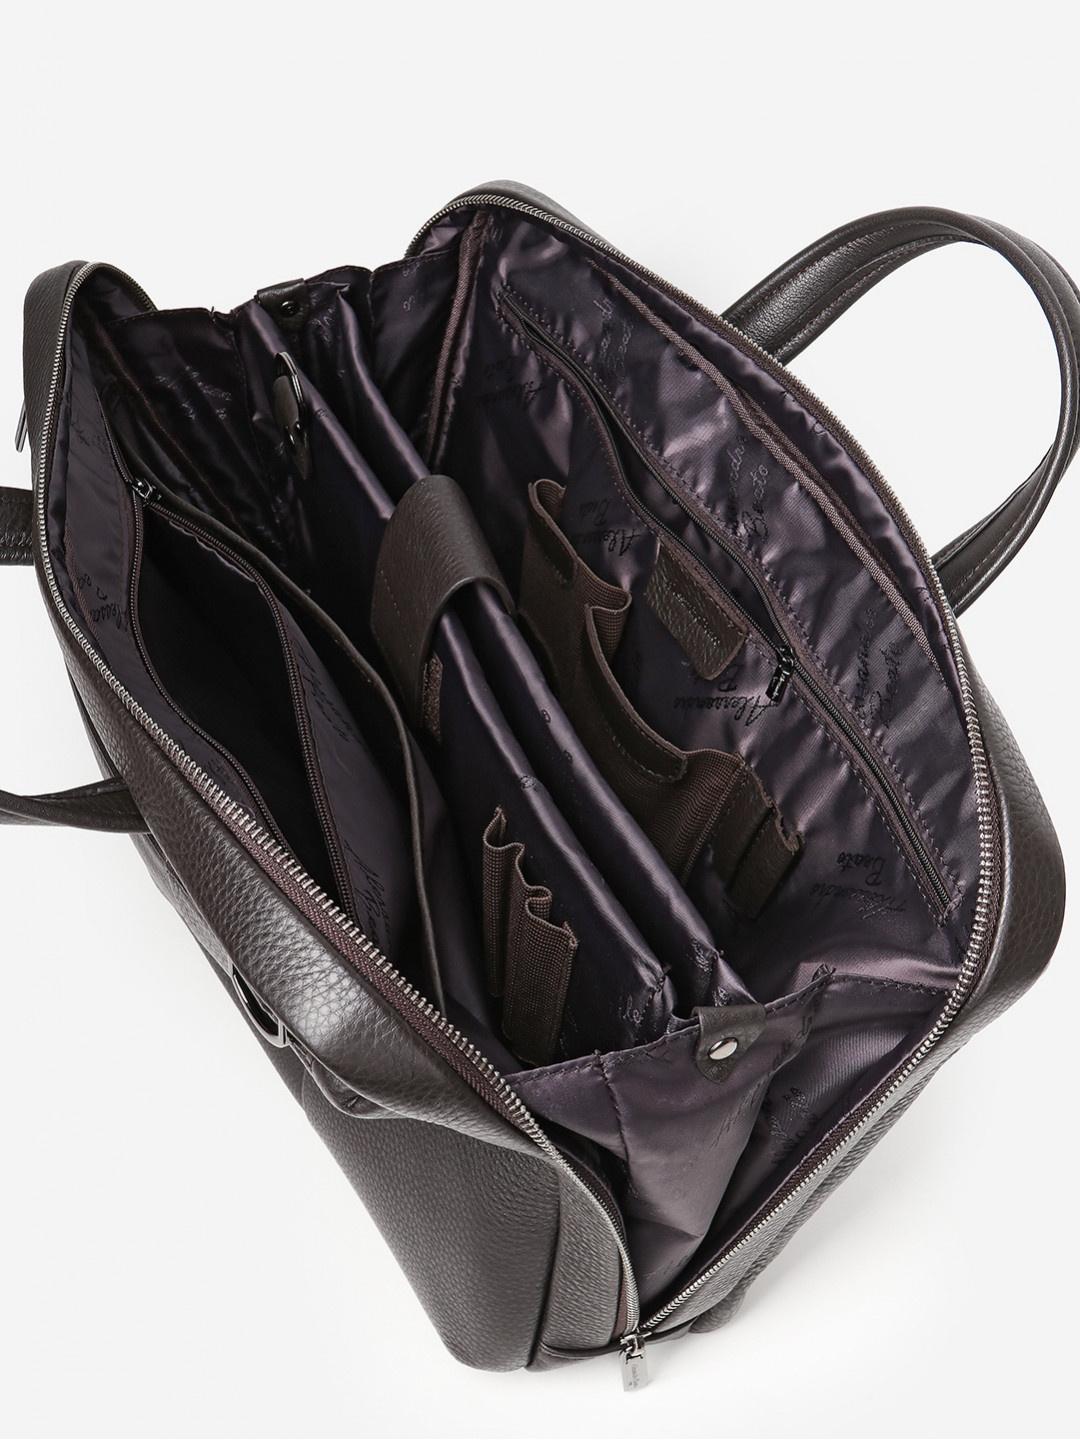 Фото Кожаная деловая сумка формата А4 в коричневом цвете Деловые сумки (А4)